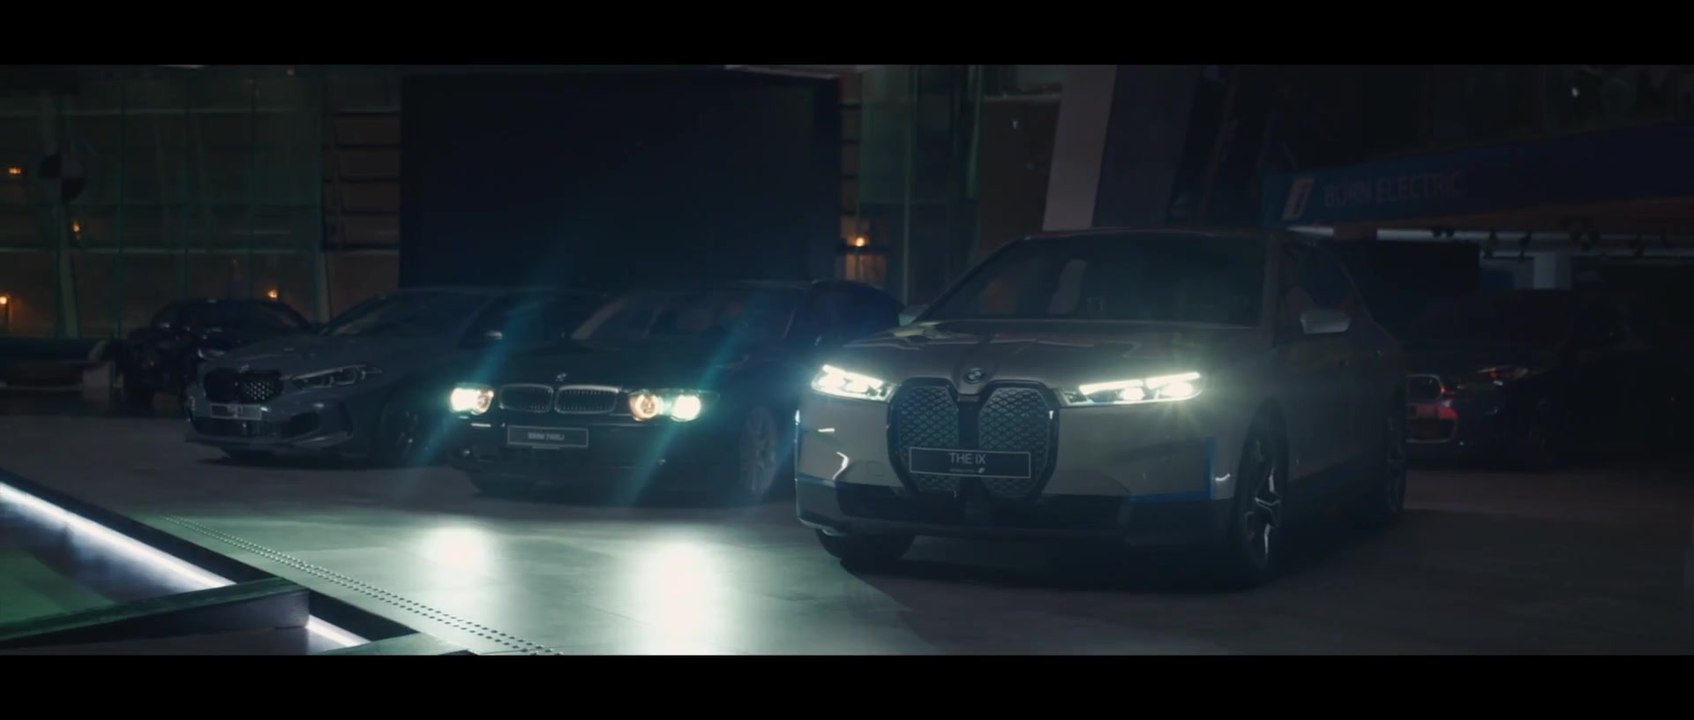 BMW kündigt auf der CES 2021 die künftige Generation des Anzeige- und Bediensystems BMW iDrive an